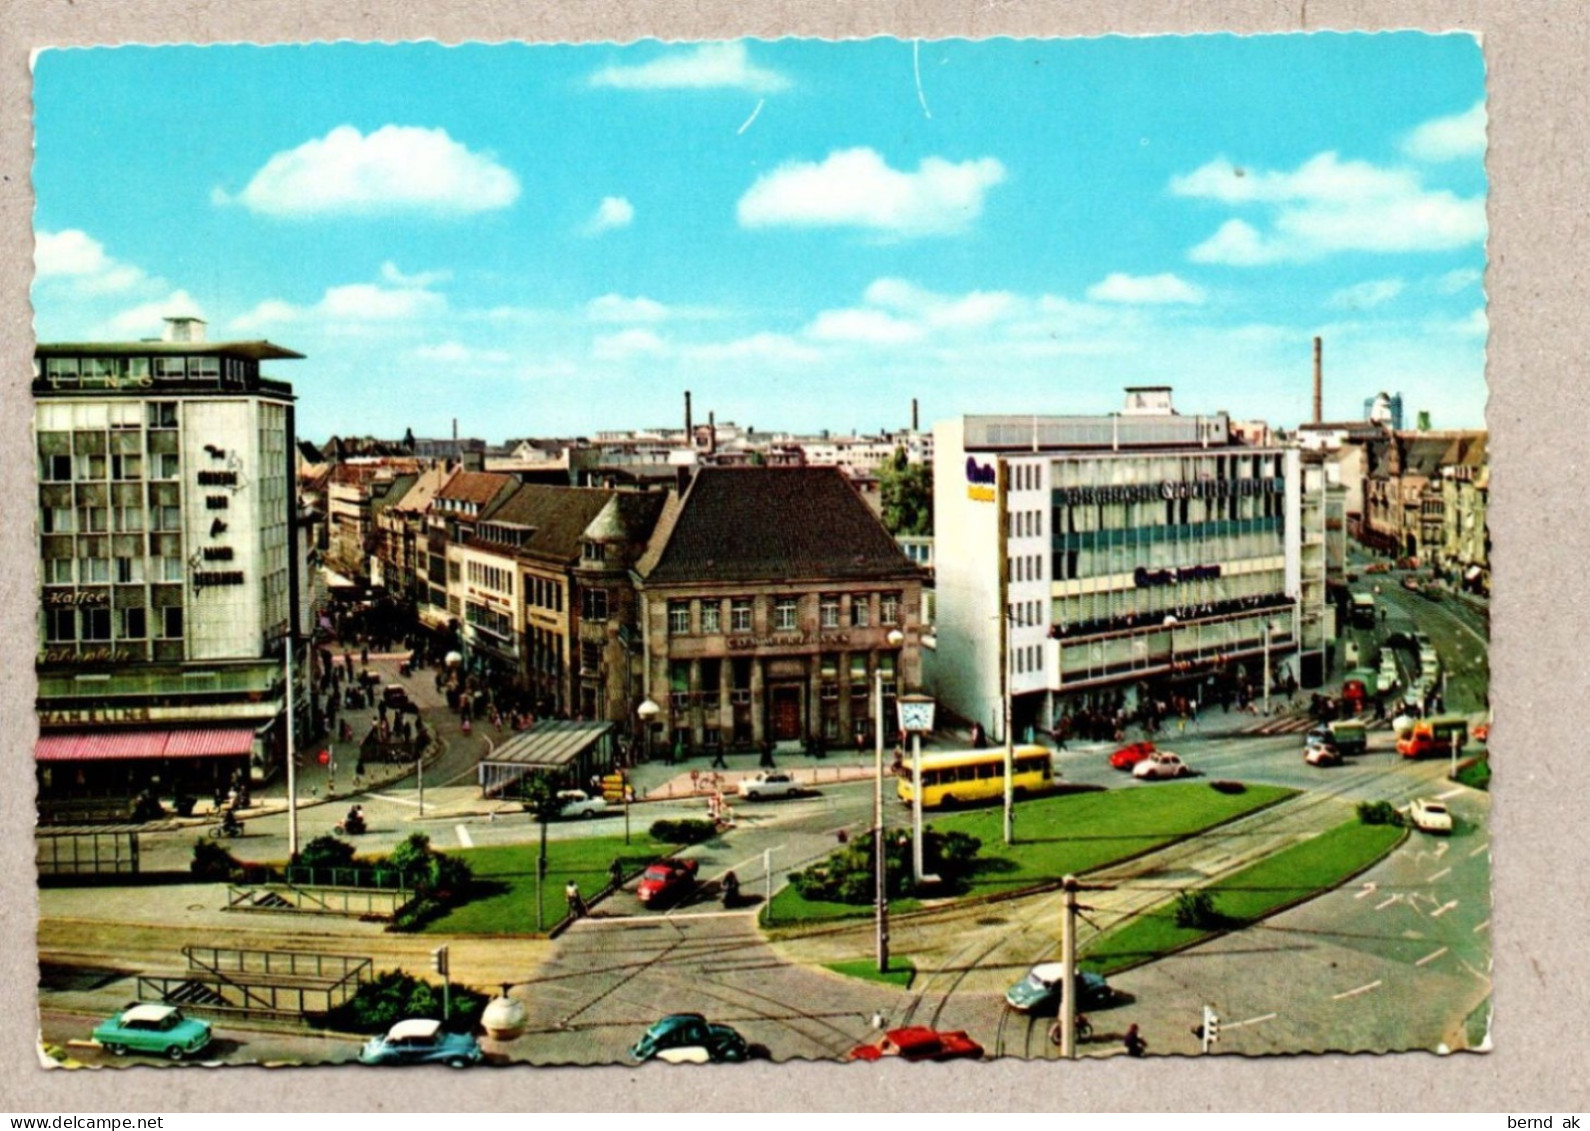 005# BRD - Color-AK :11 Karten gelaufen - Bielefeld (alle im Bild)